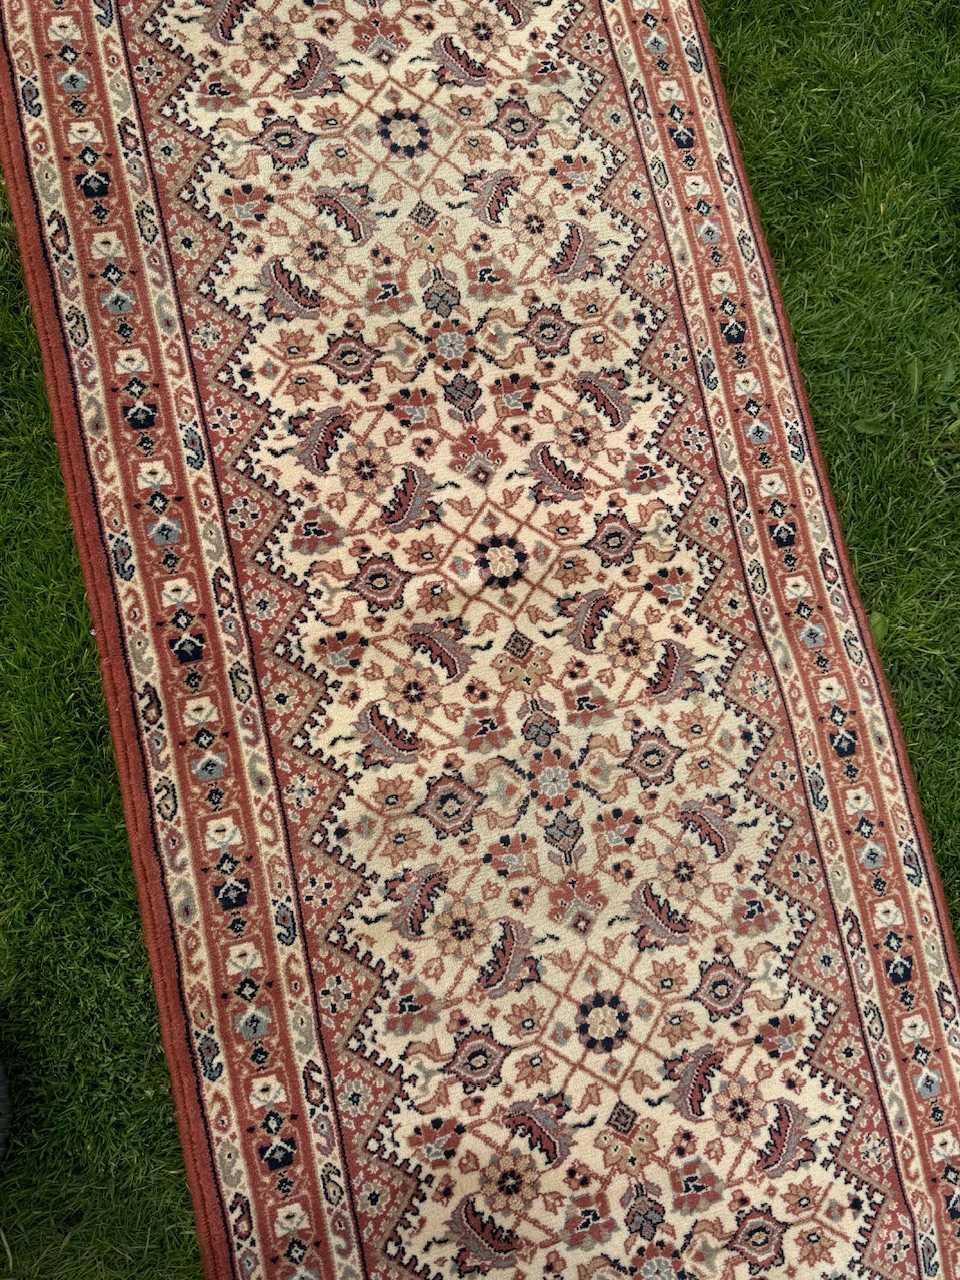 Chodnik dywan wełniany wzór perski od Adoros  730x68 galeria 9 tys